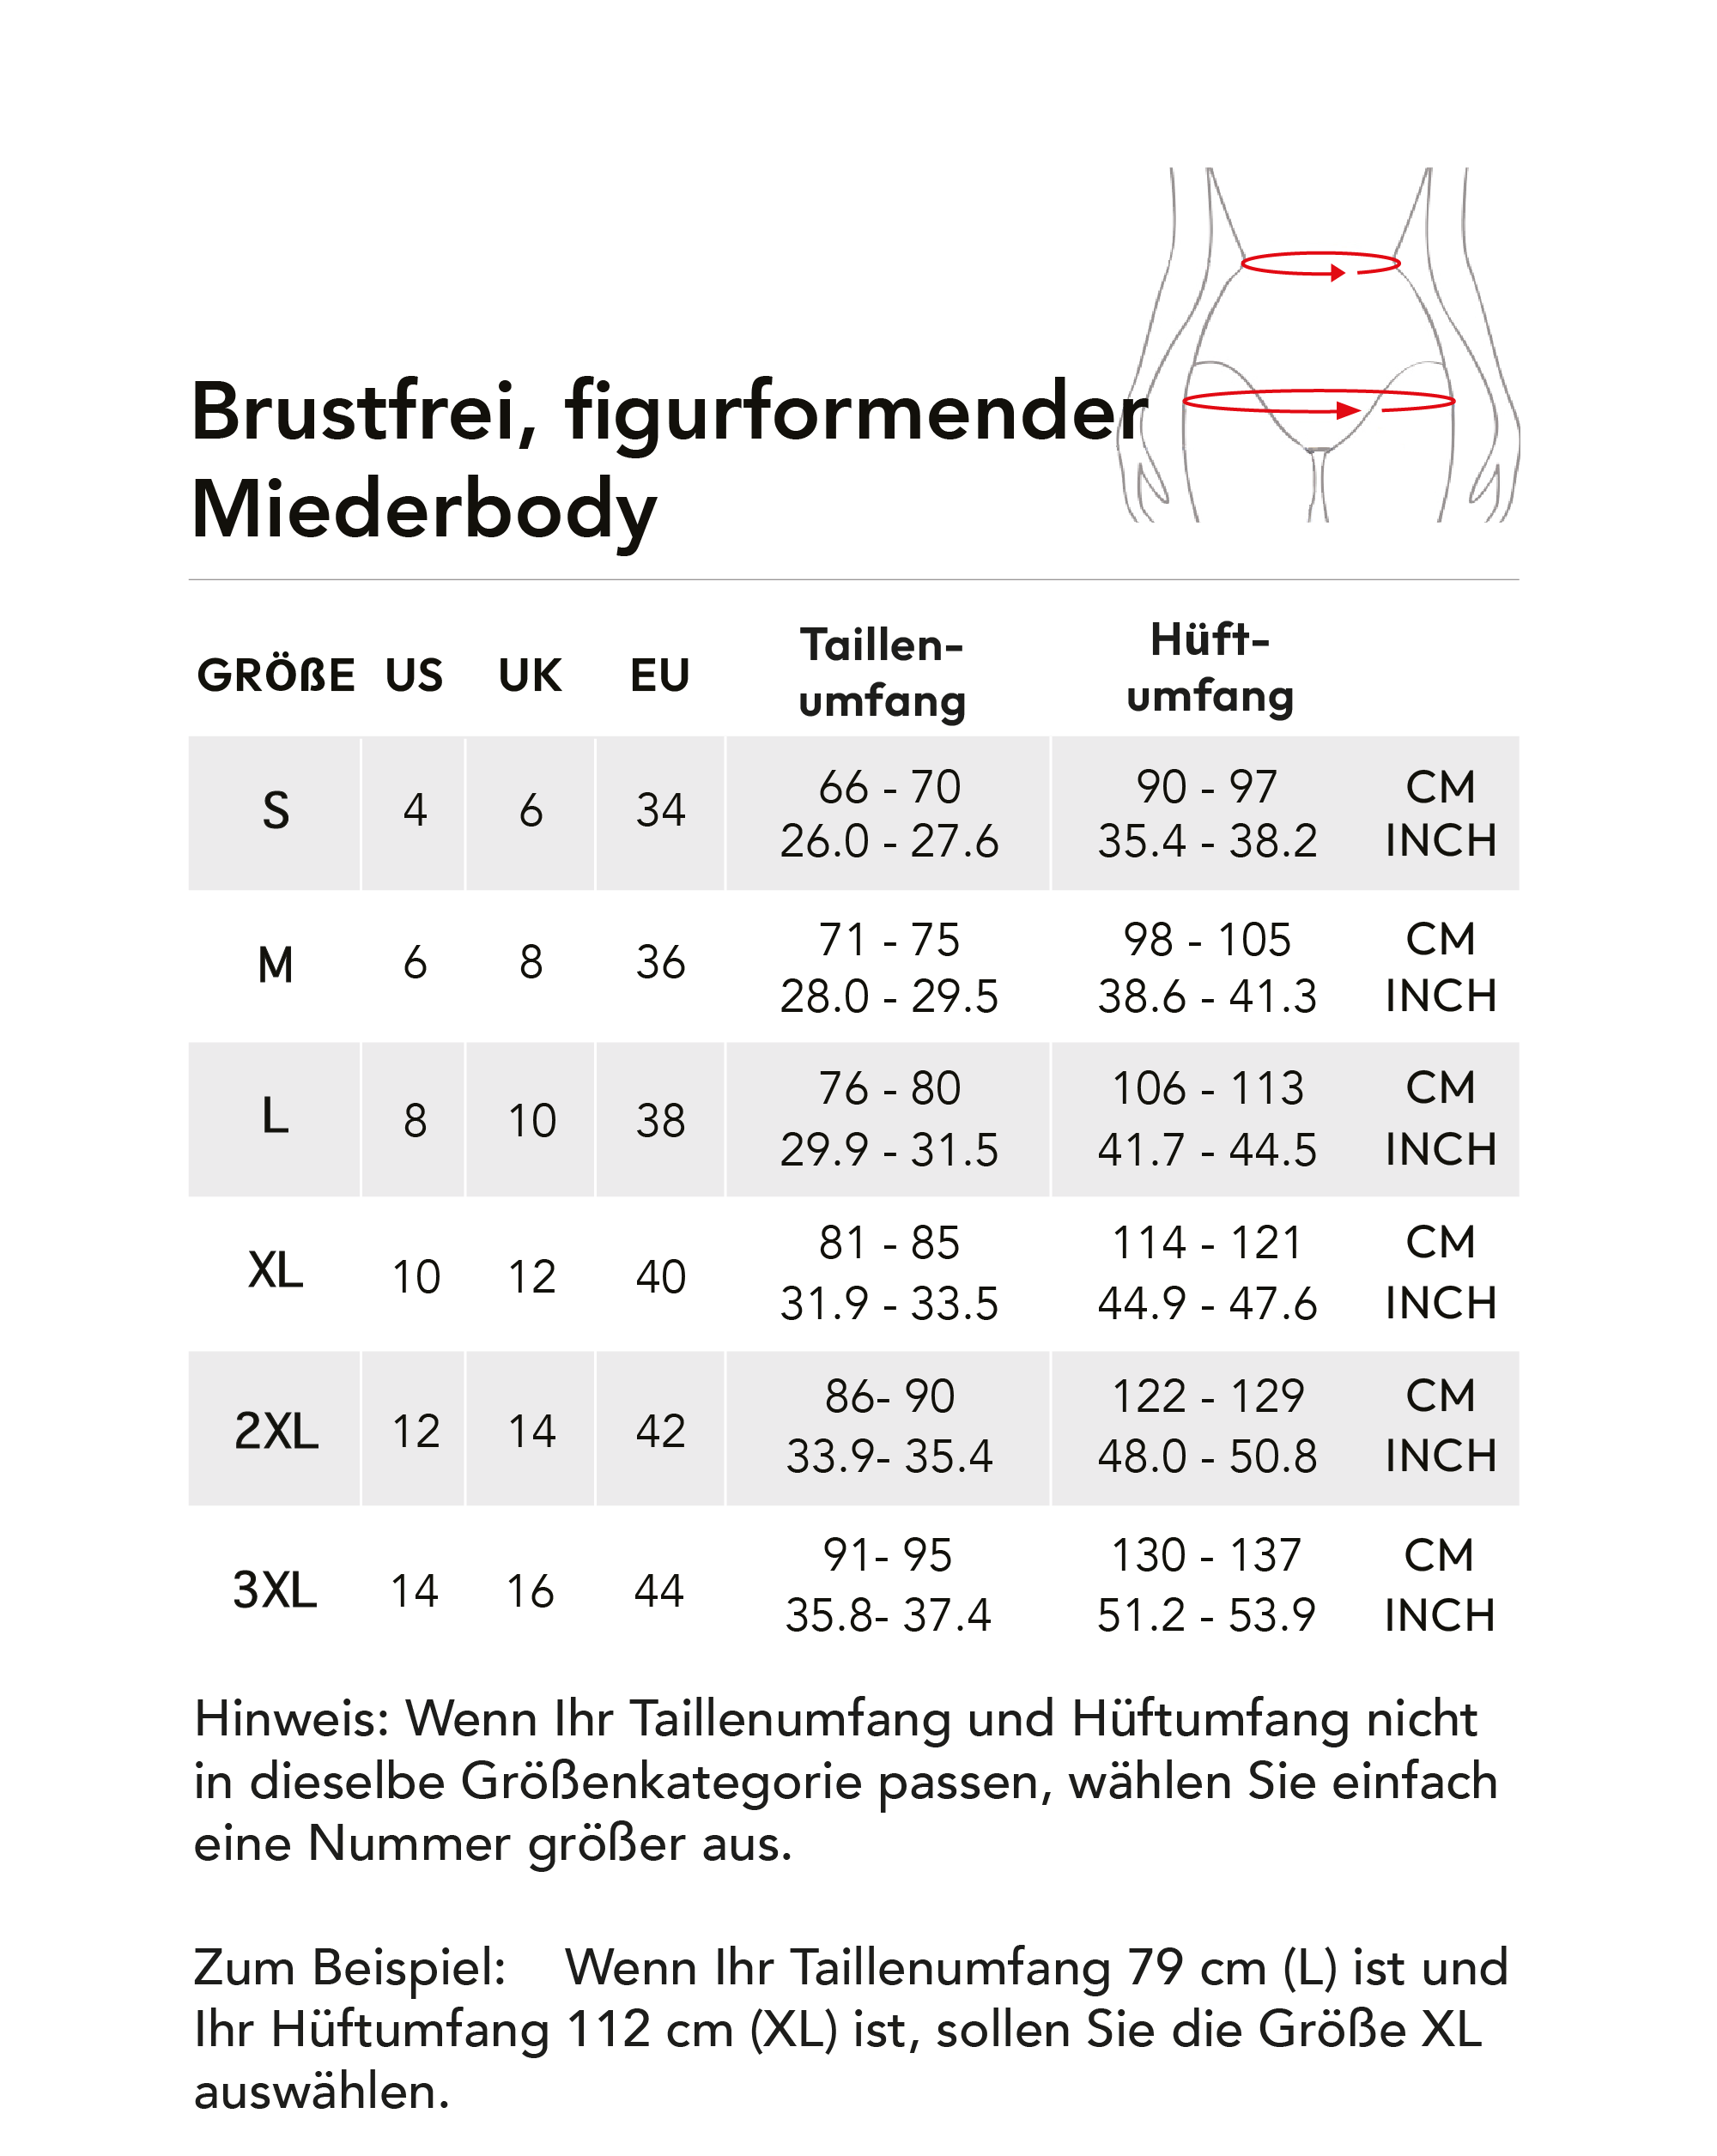 brustfrei-figurformender-miederbody-43.png (222 KB)